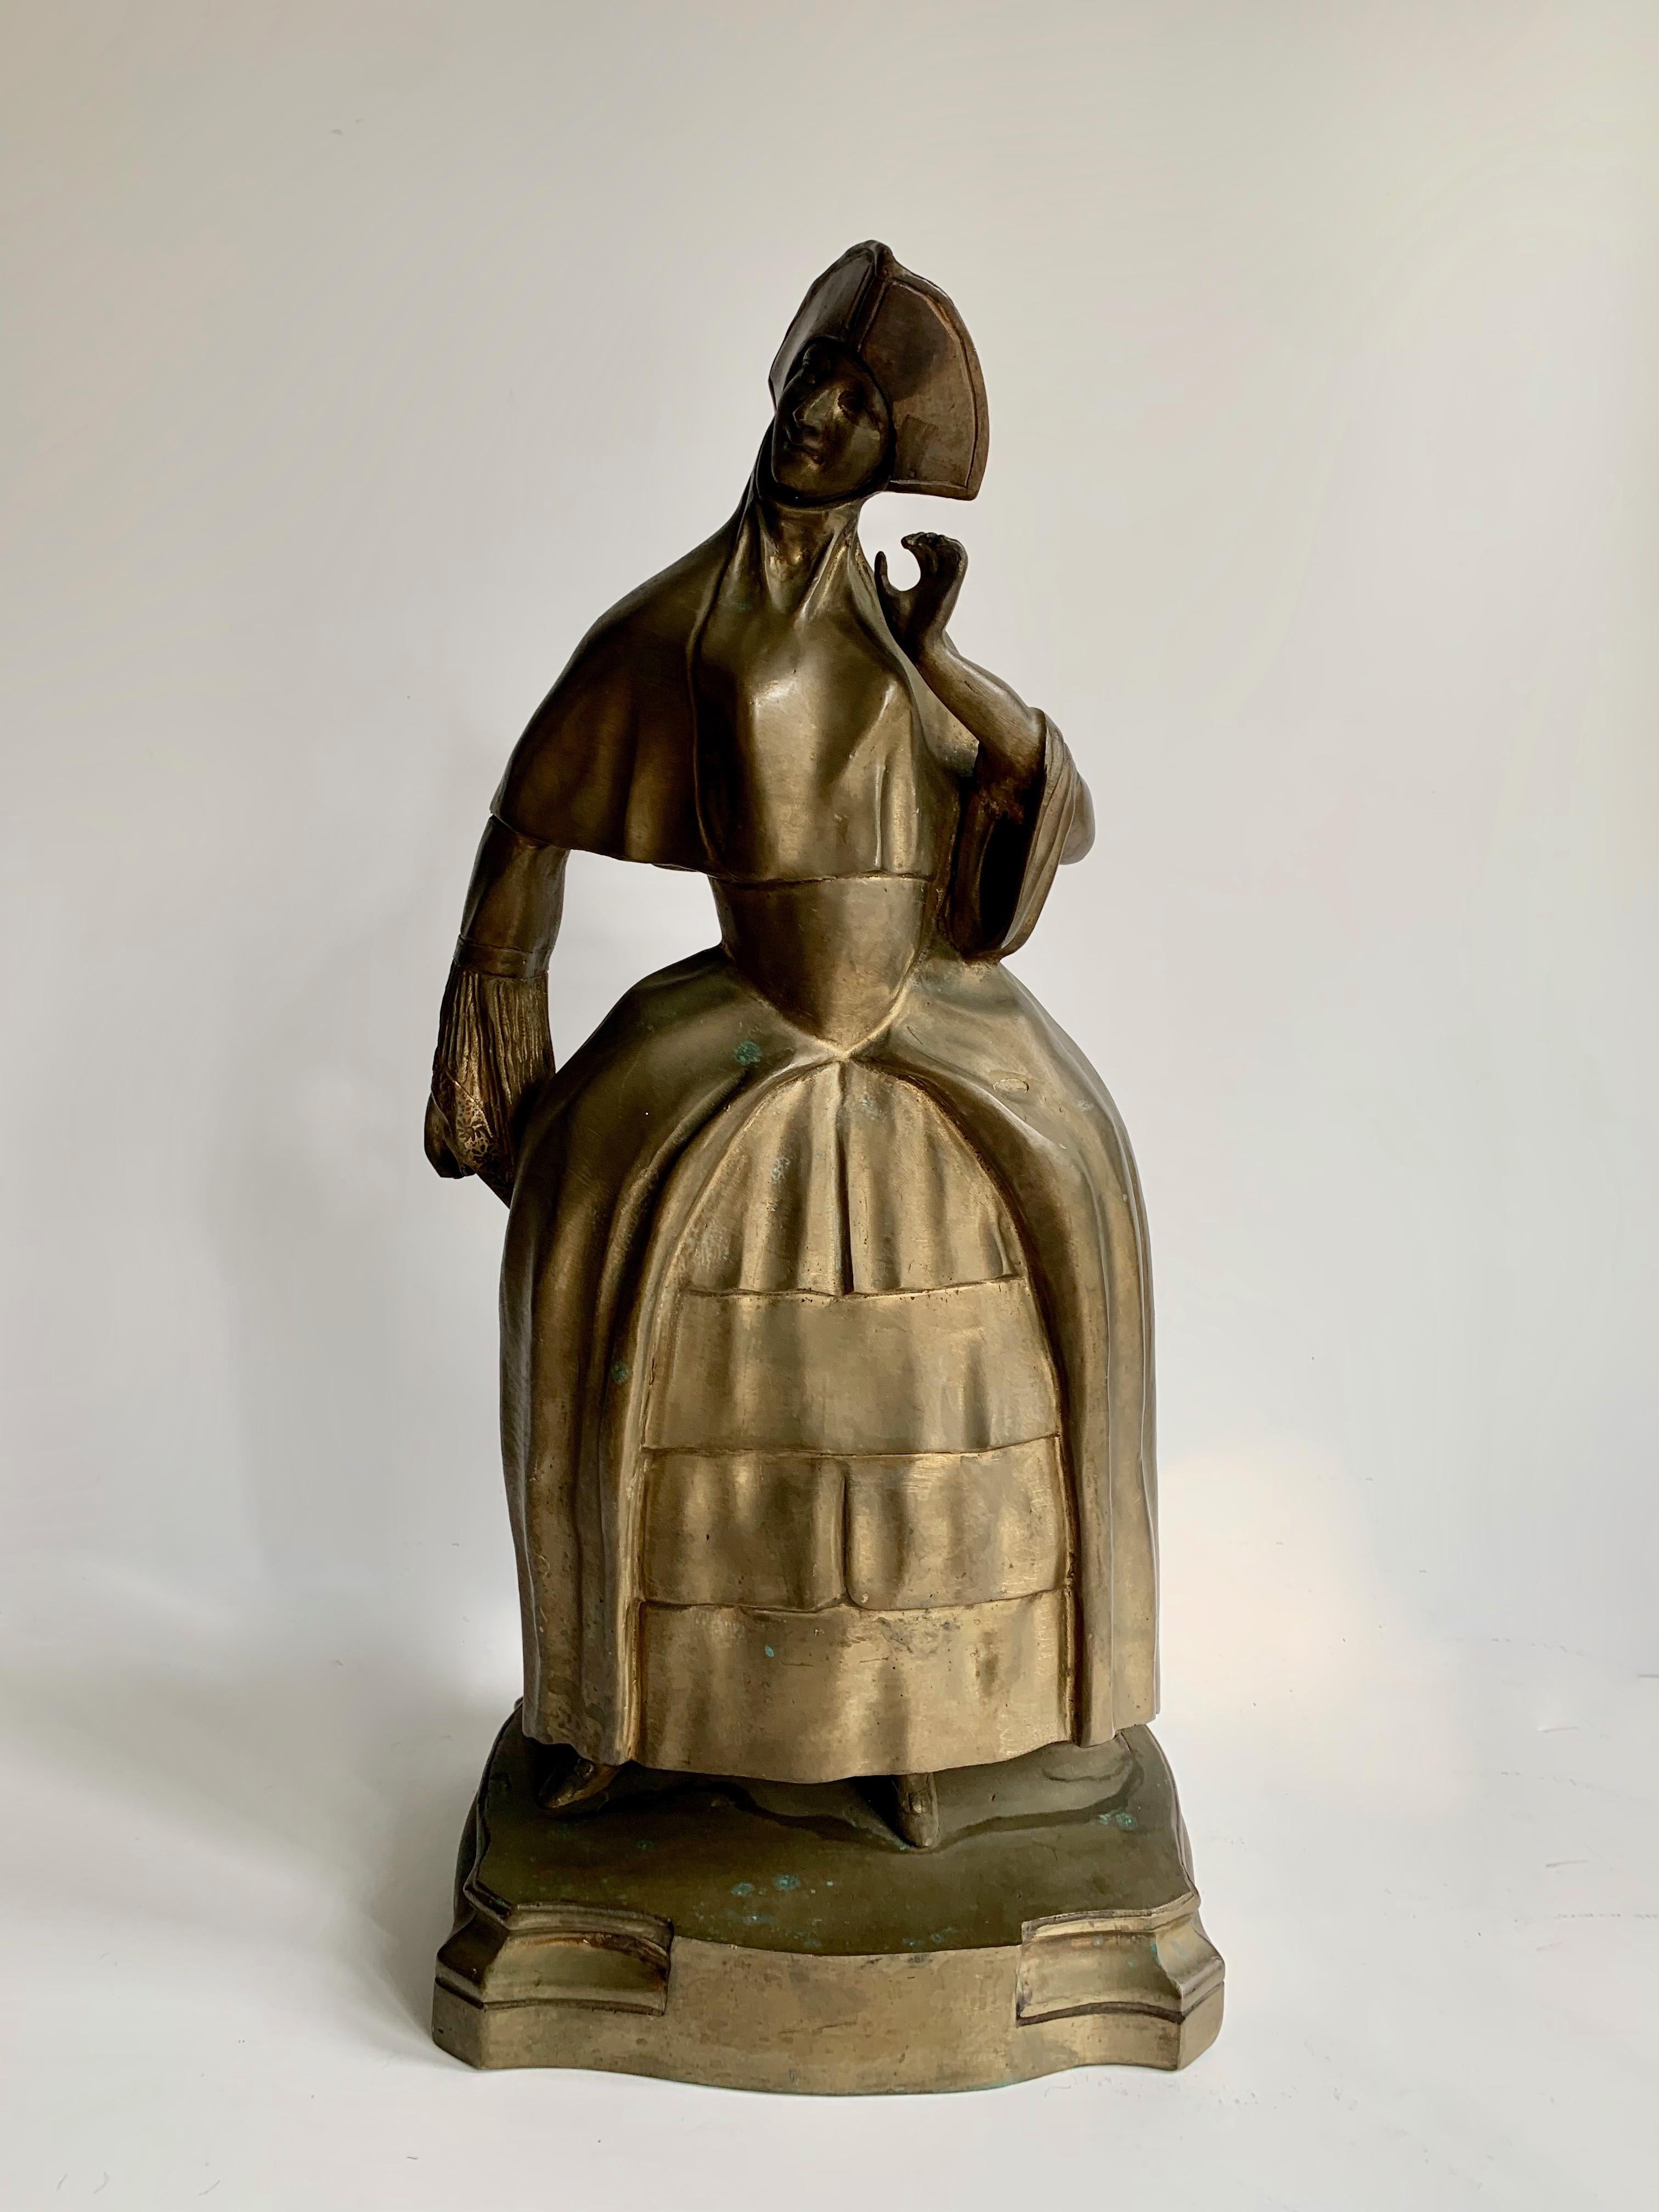 Eine wunderbare, detailreiche Skulptur einer Dame in mittelalterlicher Frauentracht und mit Hut. 

Ein gutes Gewicht von 18 Pfund - zu verwenden als robuste Buchstütze, Dekoration oder Türstopper. Seien Sie kreativ! 

 